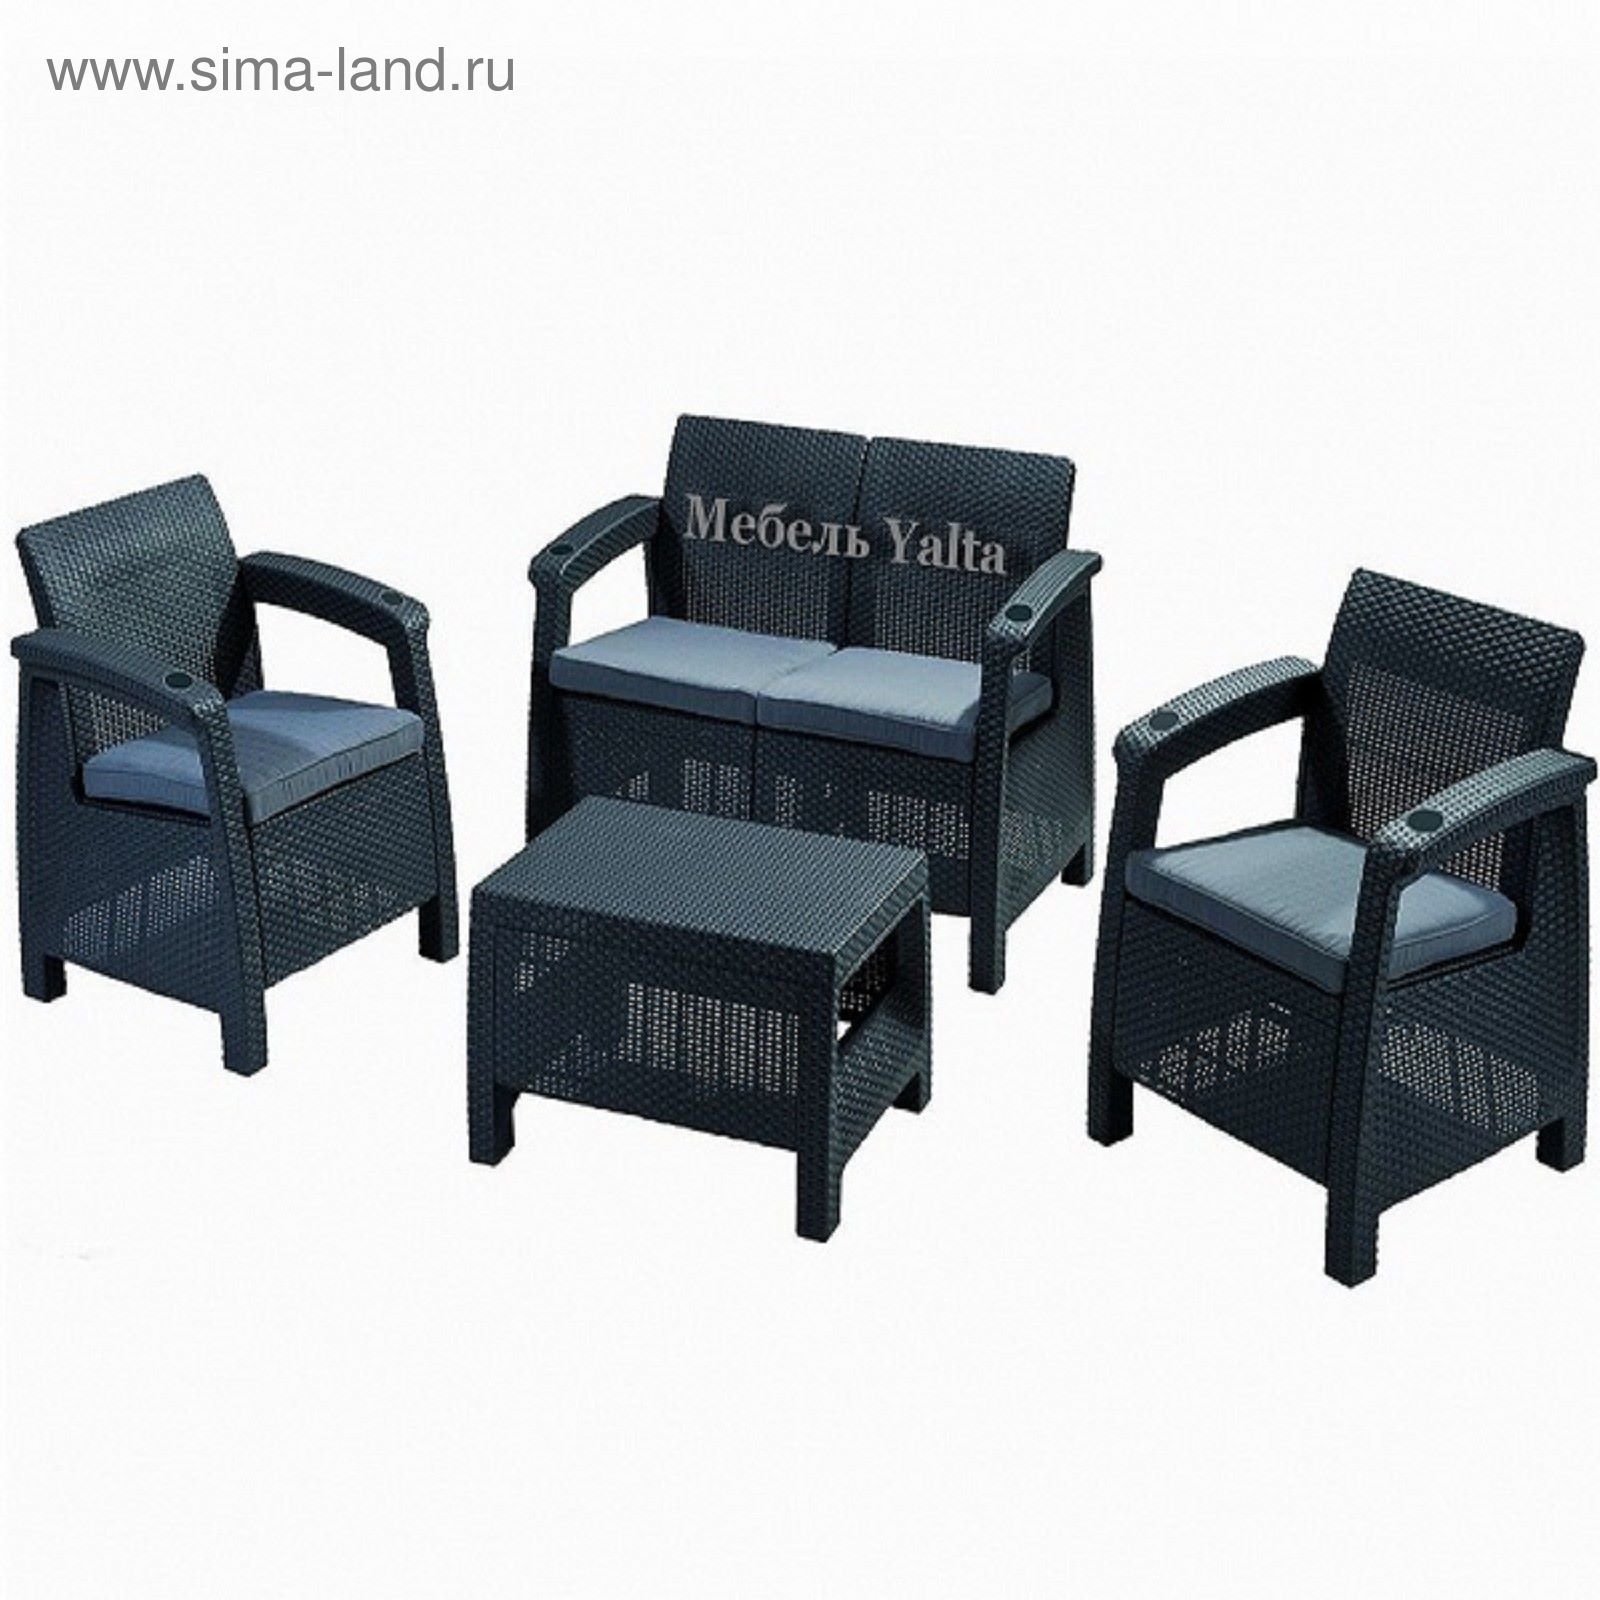 Комплект садовой мебели (2ух местный диван +2 кресла+ столик )  Yalta Set  Цвет венге